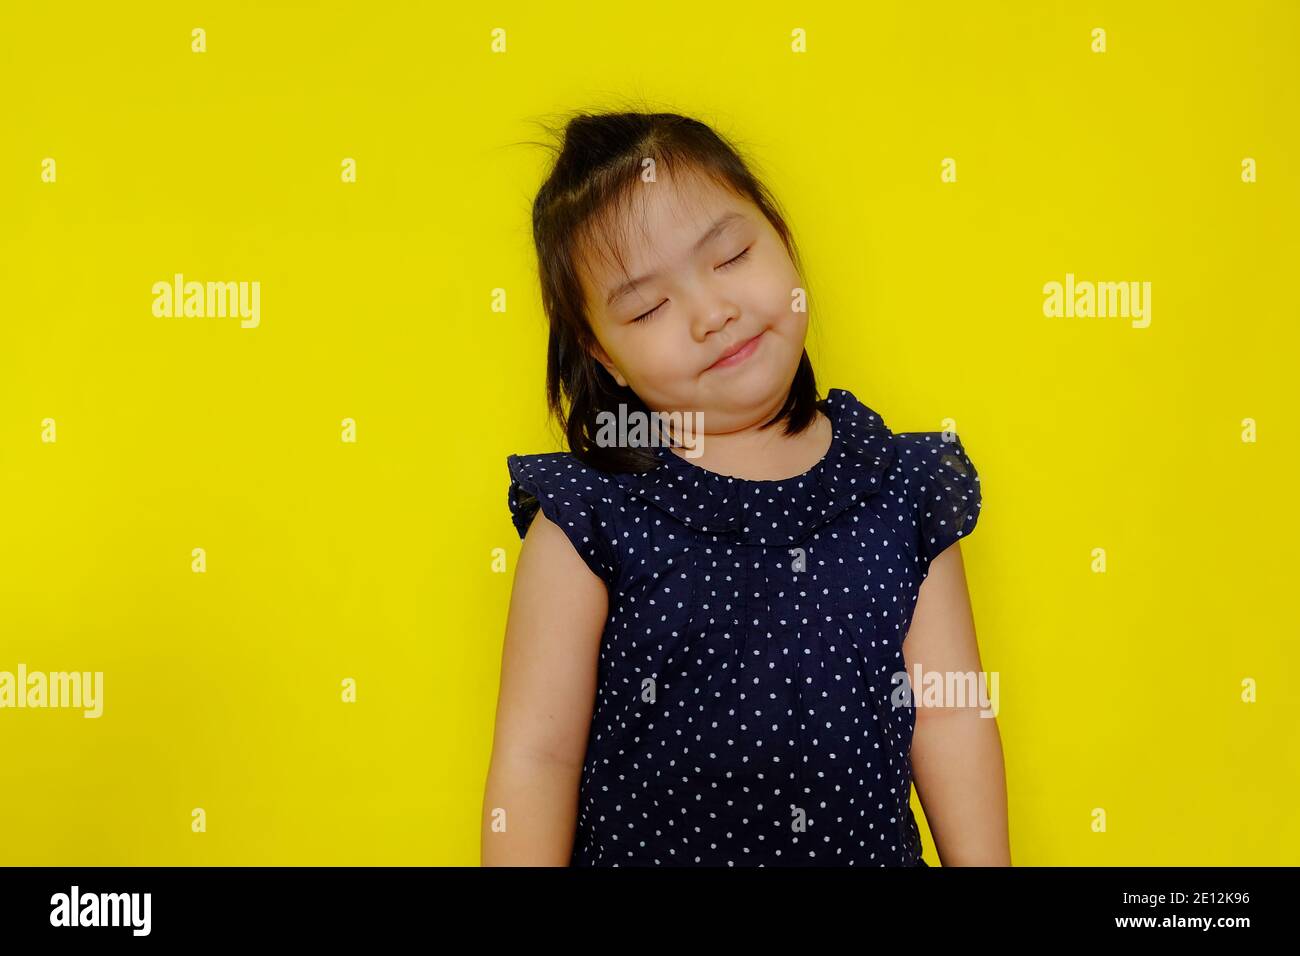 Une jolie jeune fille asiatique rêvant de jour, souriant avec ses yeux proches et une pensée heureuse. Arrière-plan jaune vif. Banque D'Images